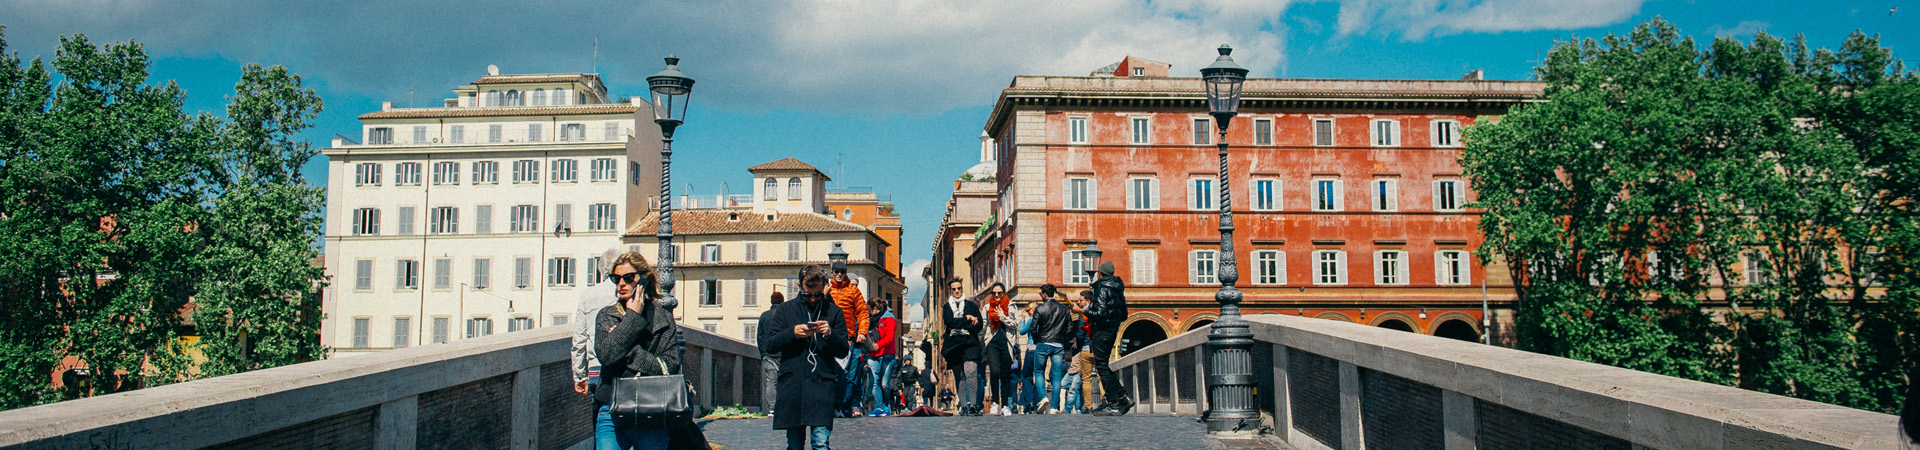 Residential Life Program | John Cabot University | Rome